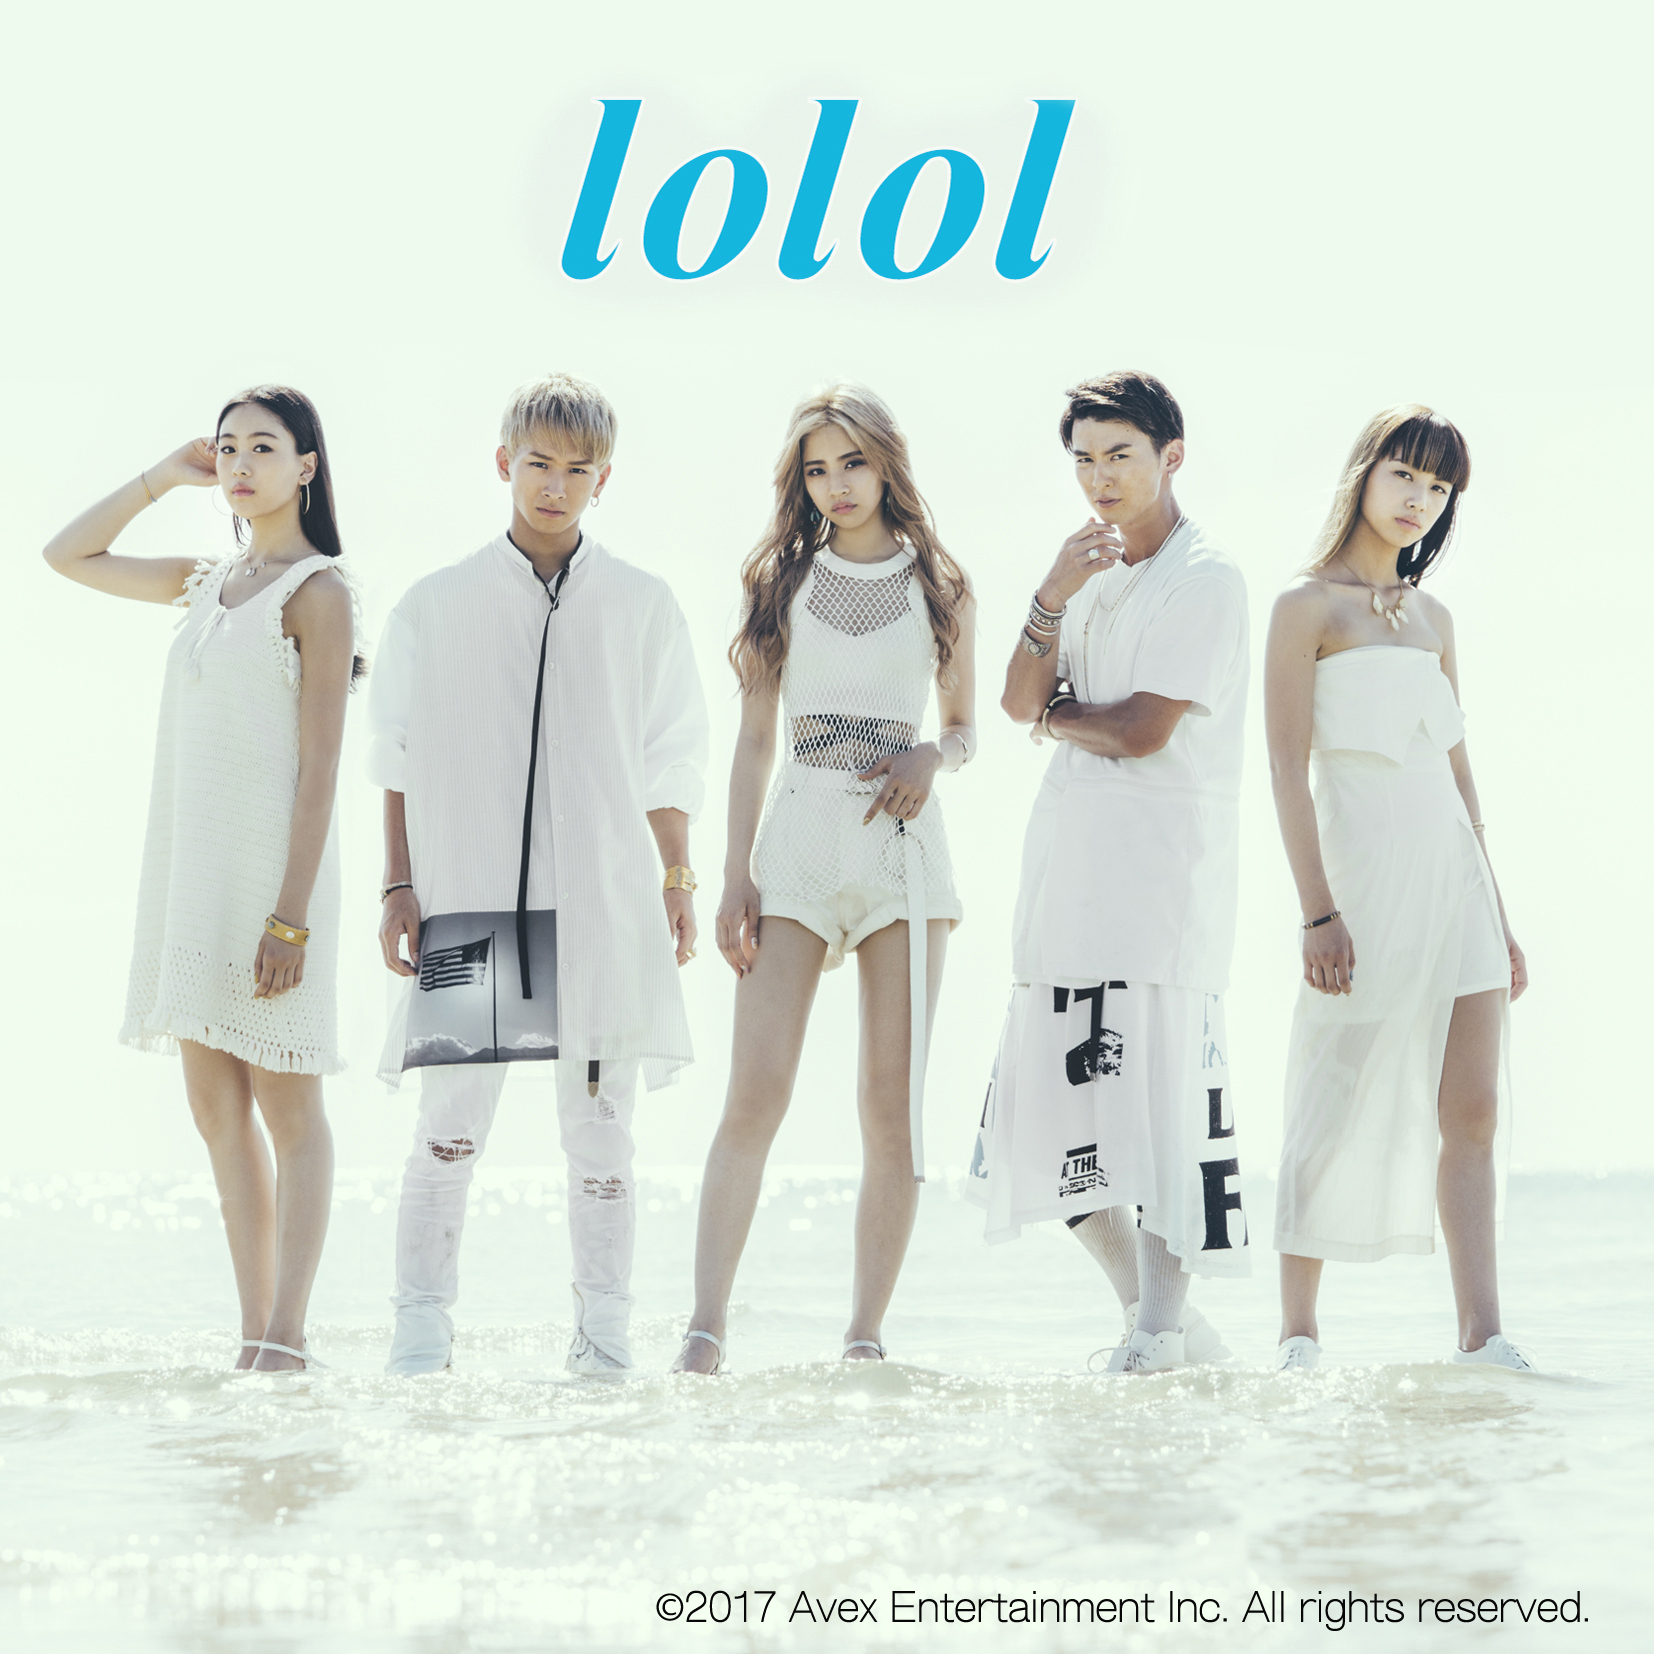 テーマソングは「lol-エルオーエル」のアルバム「lolol」に収録された「hanauta」